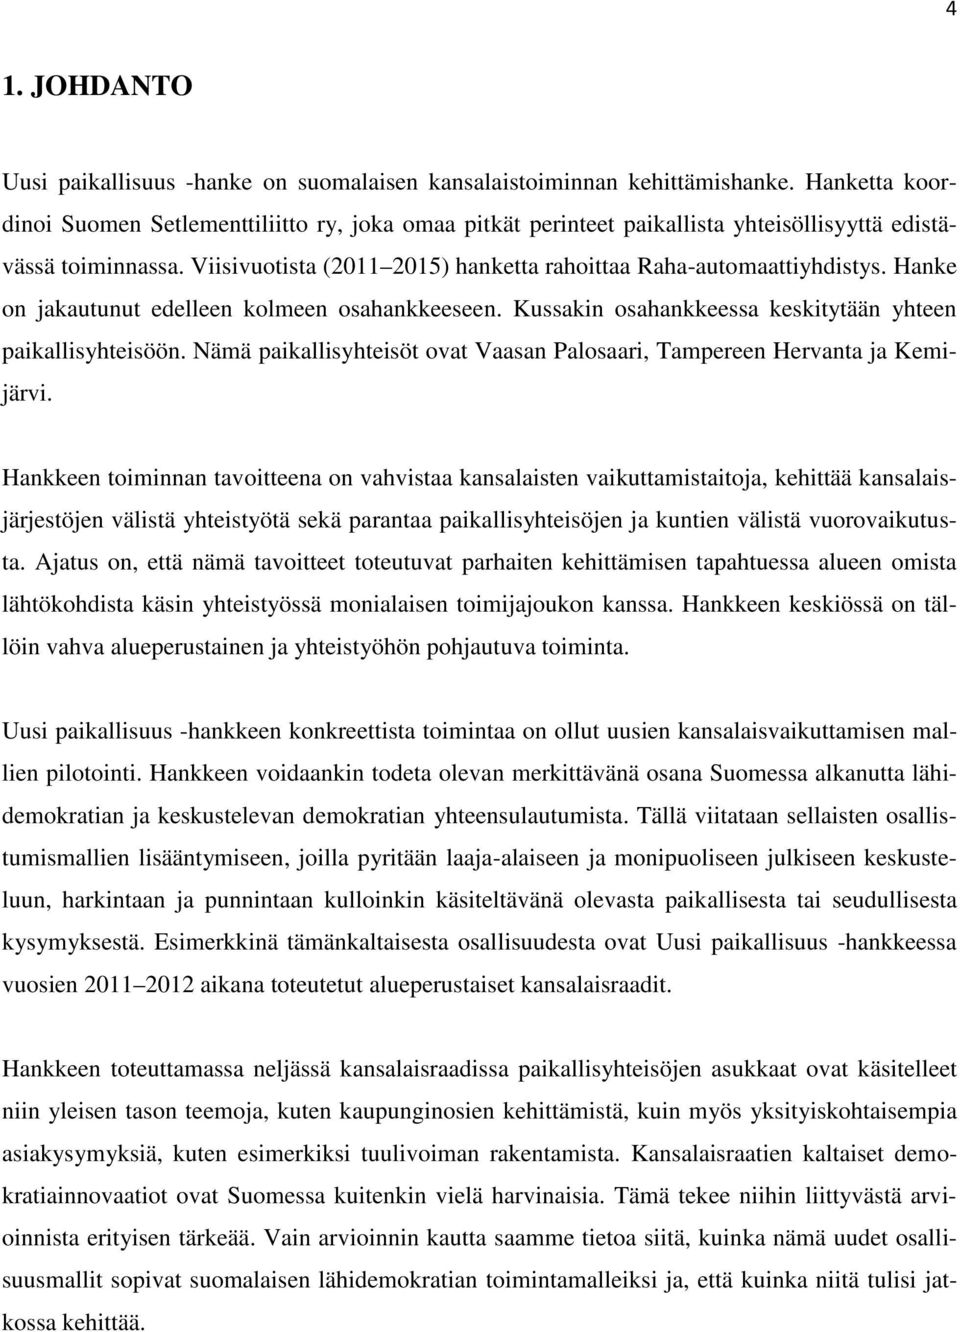 Hanke on jakautunut edelleen kolmeen osahankkeeseen. Kussakin osahankkeessa keskitytään yhteen paikallisyhteisöön. Nämä paikallisyhteisöt ovat Vaasan Palosaari, Tampereen Hervanta ja Kemijärvi.